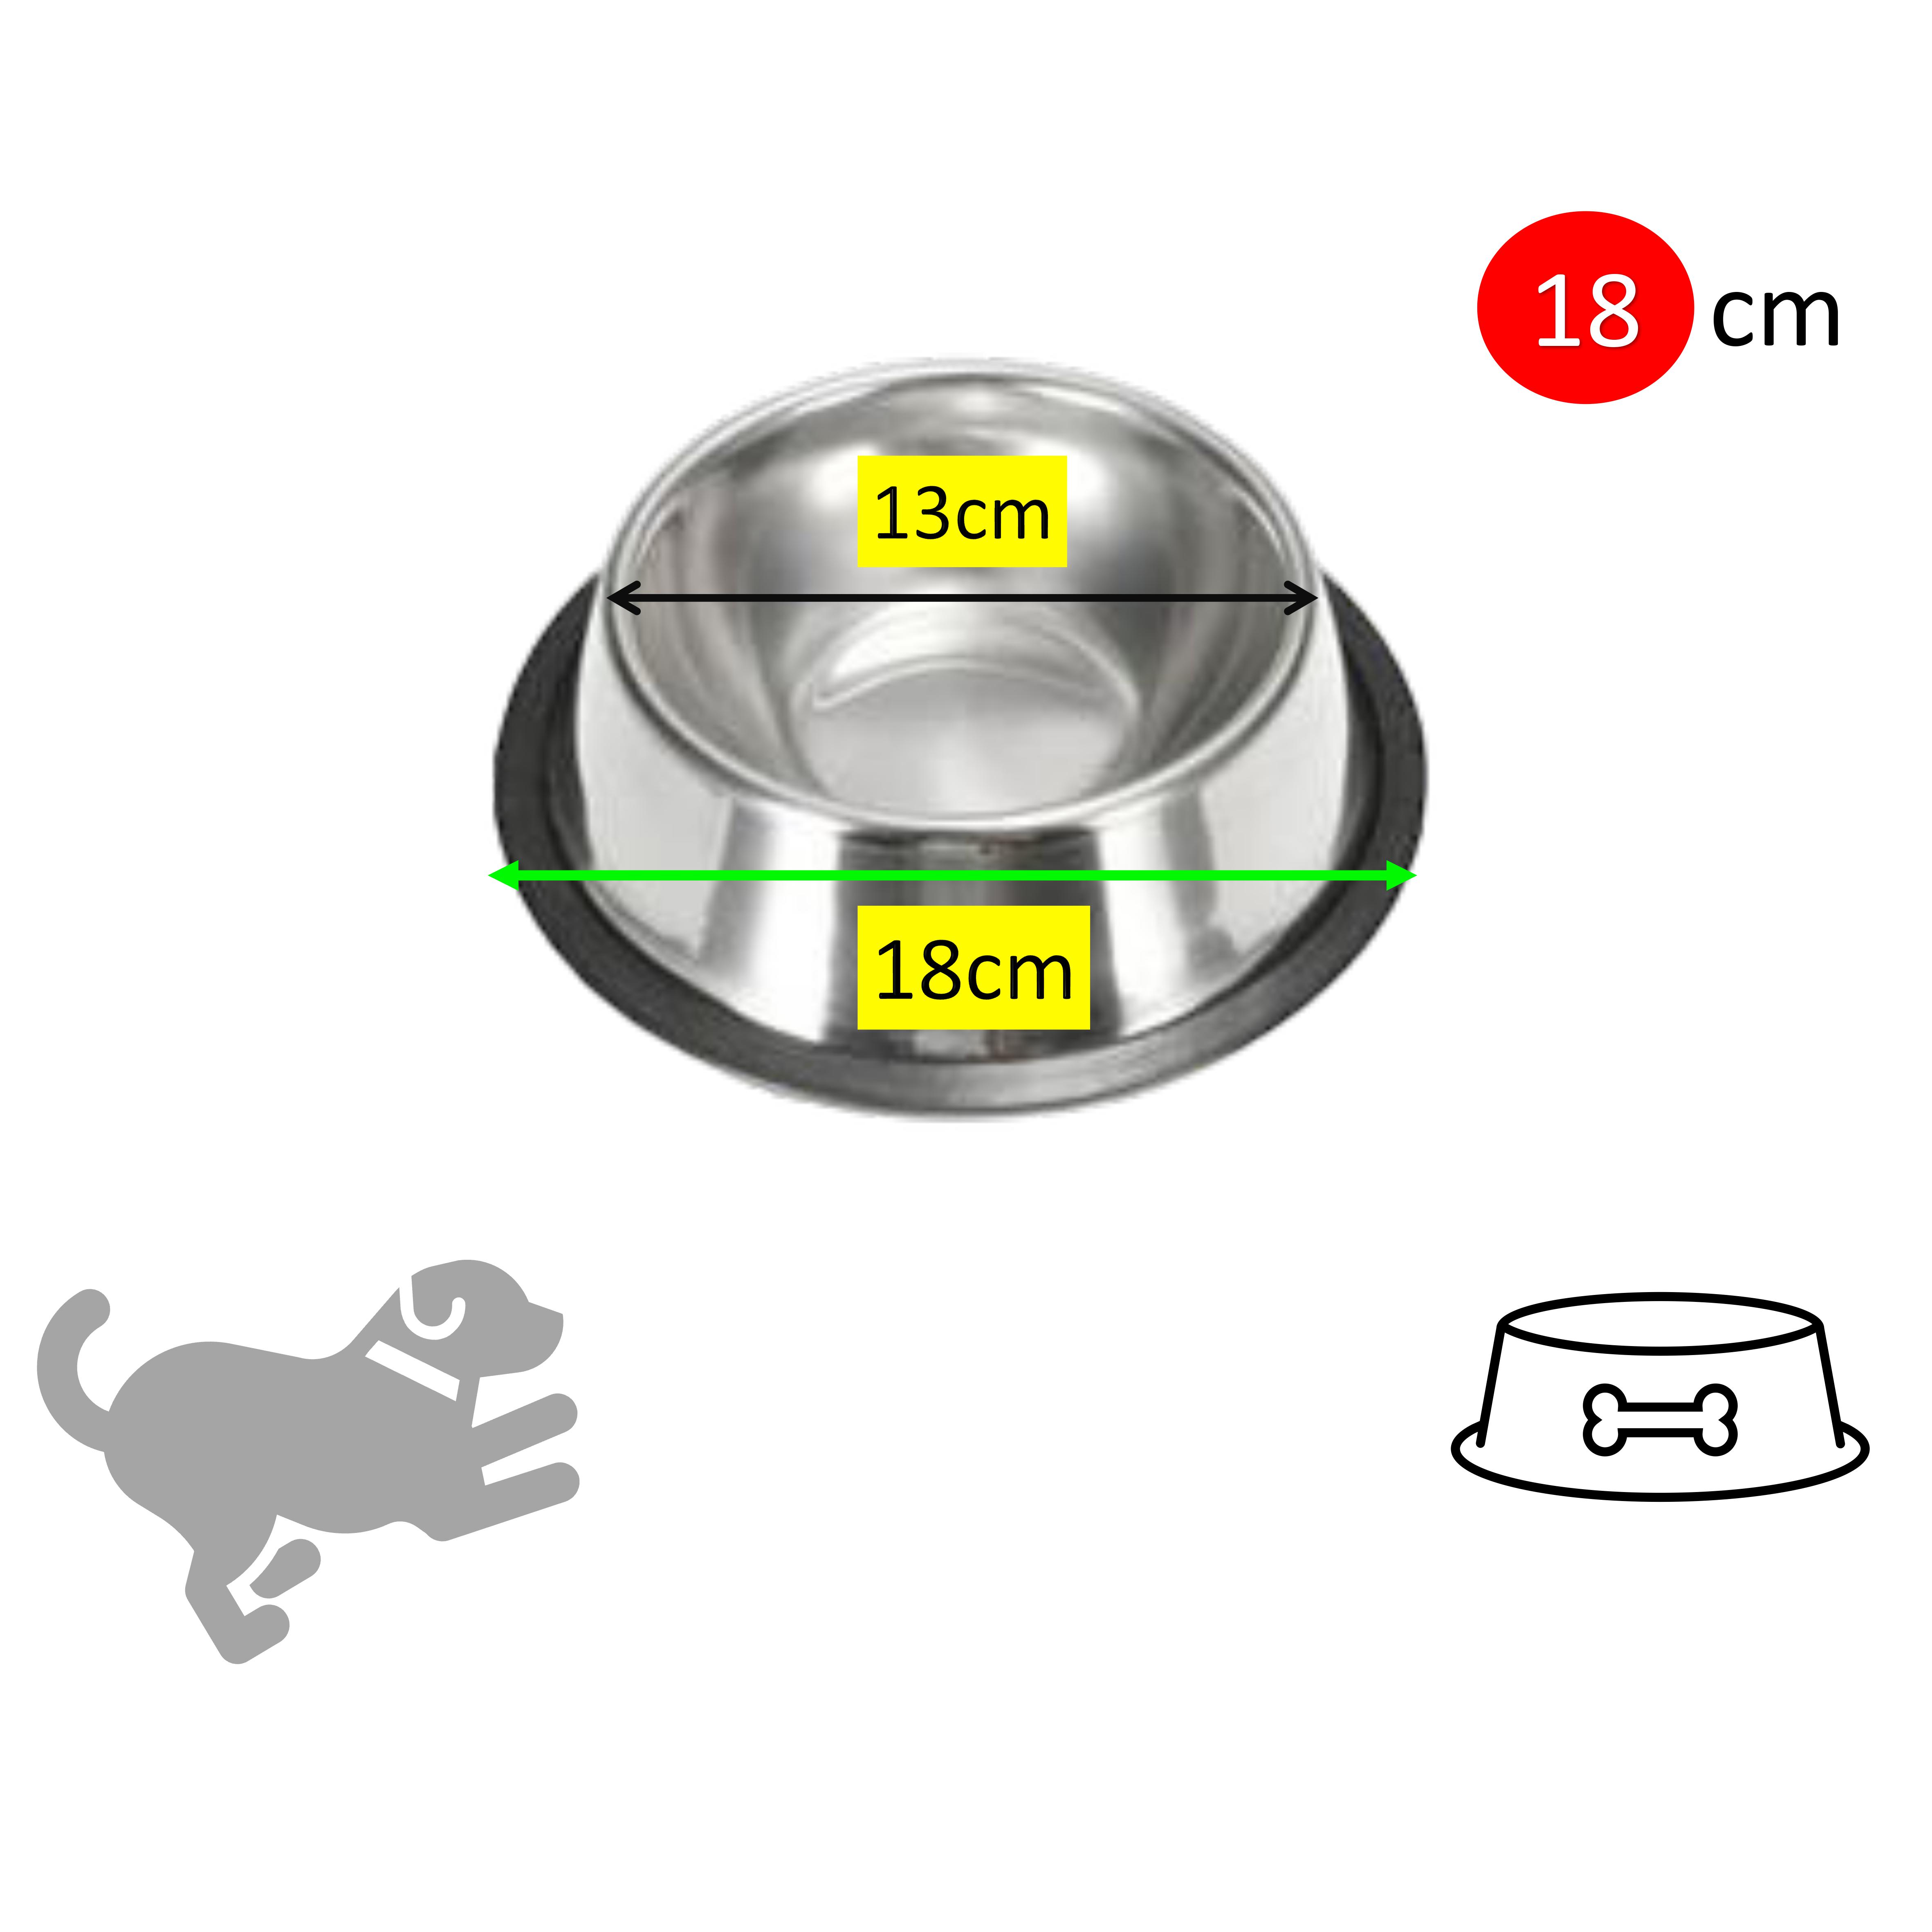 Bát ăn cho chó, mèo, thú cưng - Chất liệu thép không gỉ - Mẫu inox đơn giản dễ vệ sinh - Size nhỏ 18cm